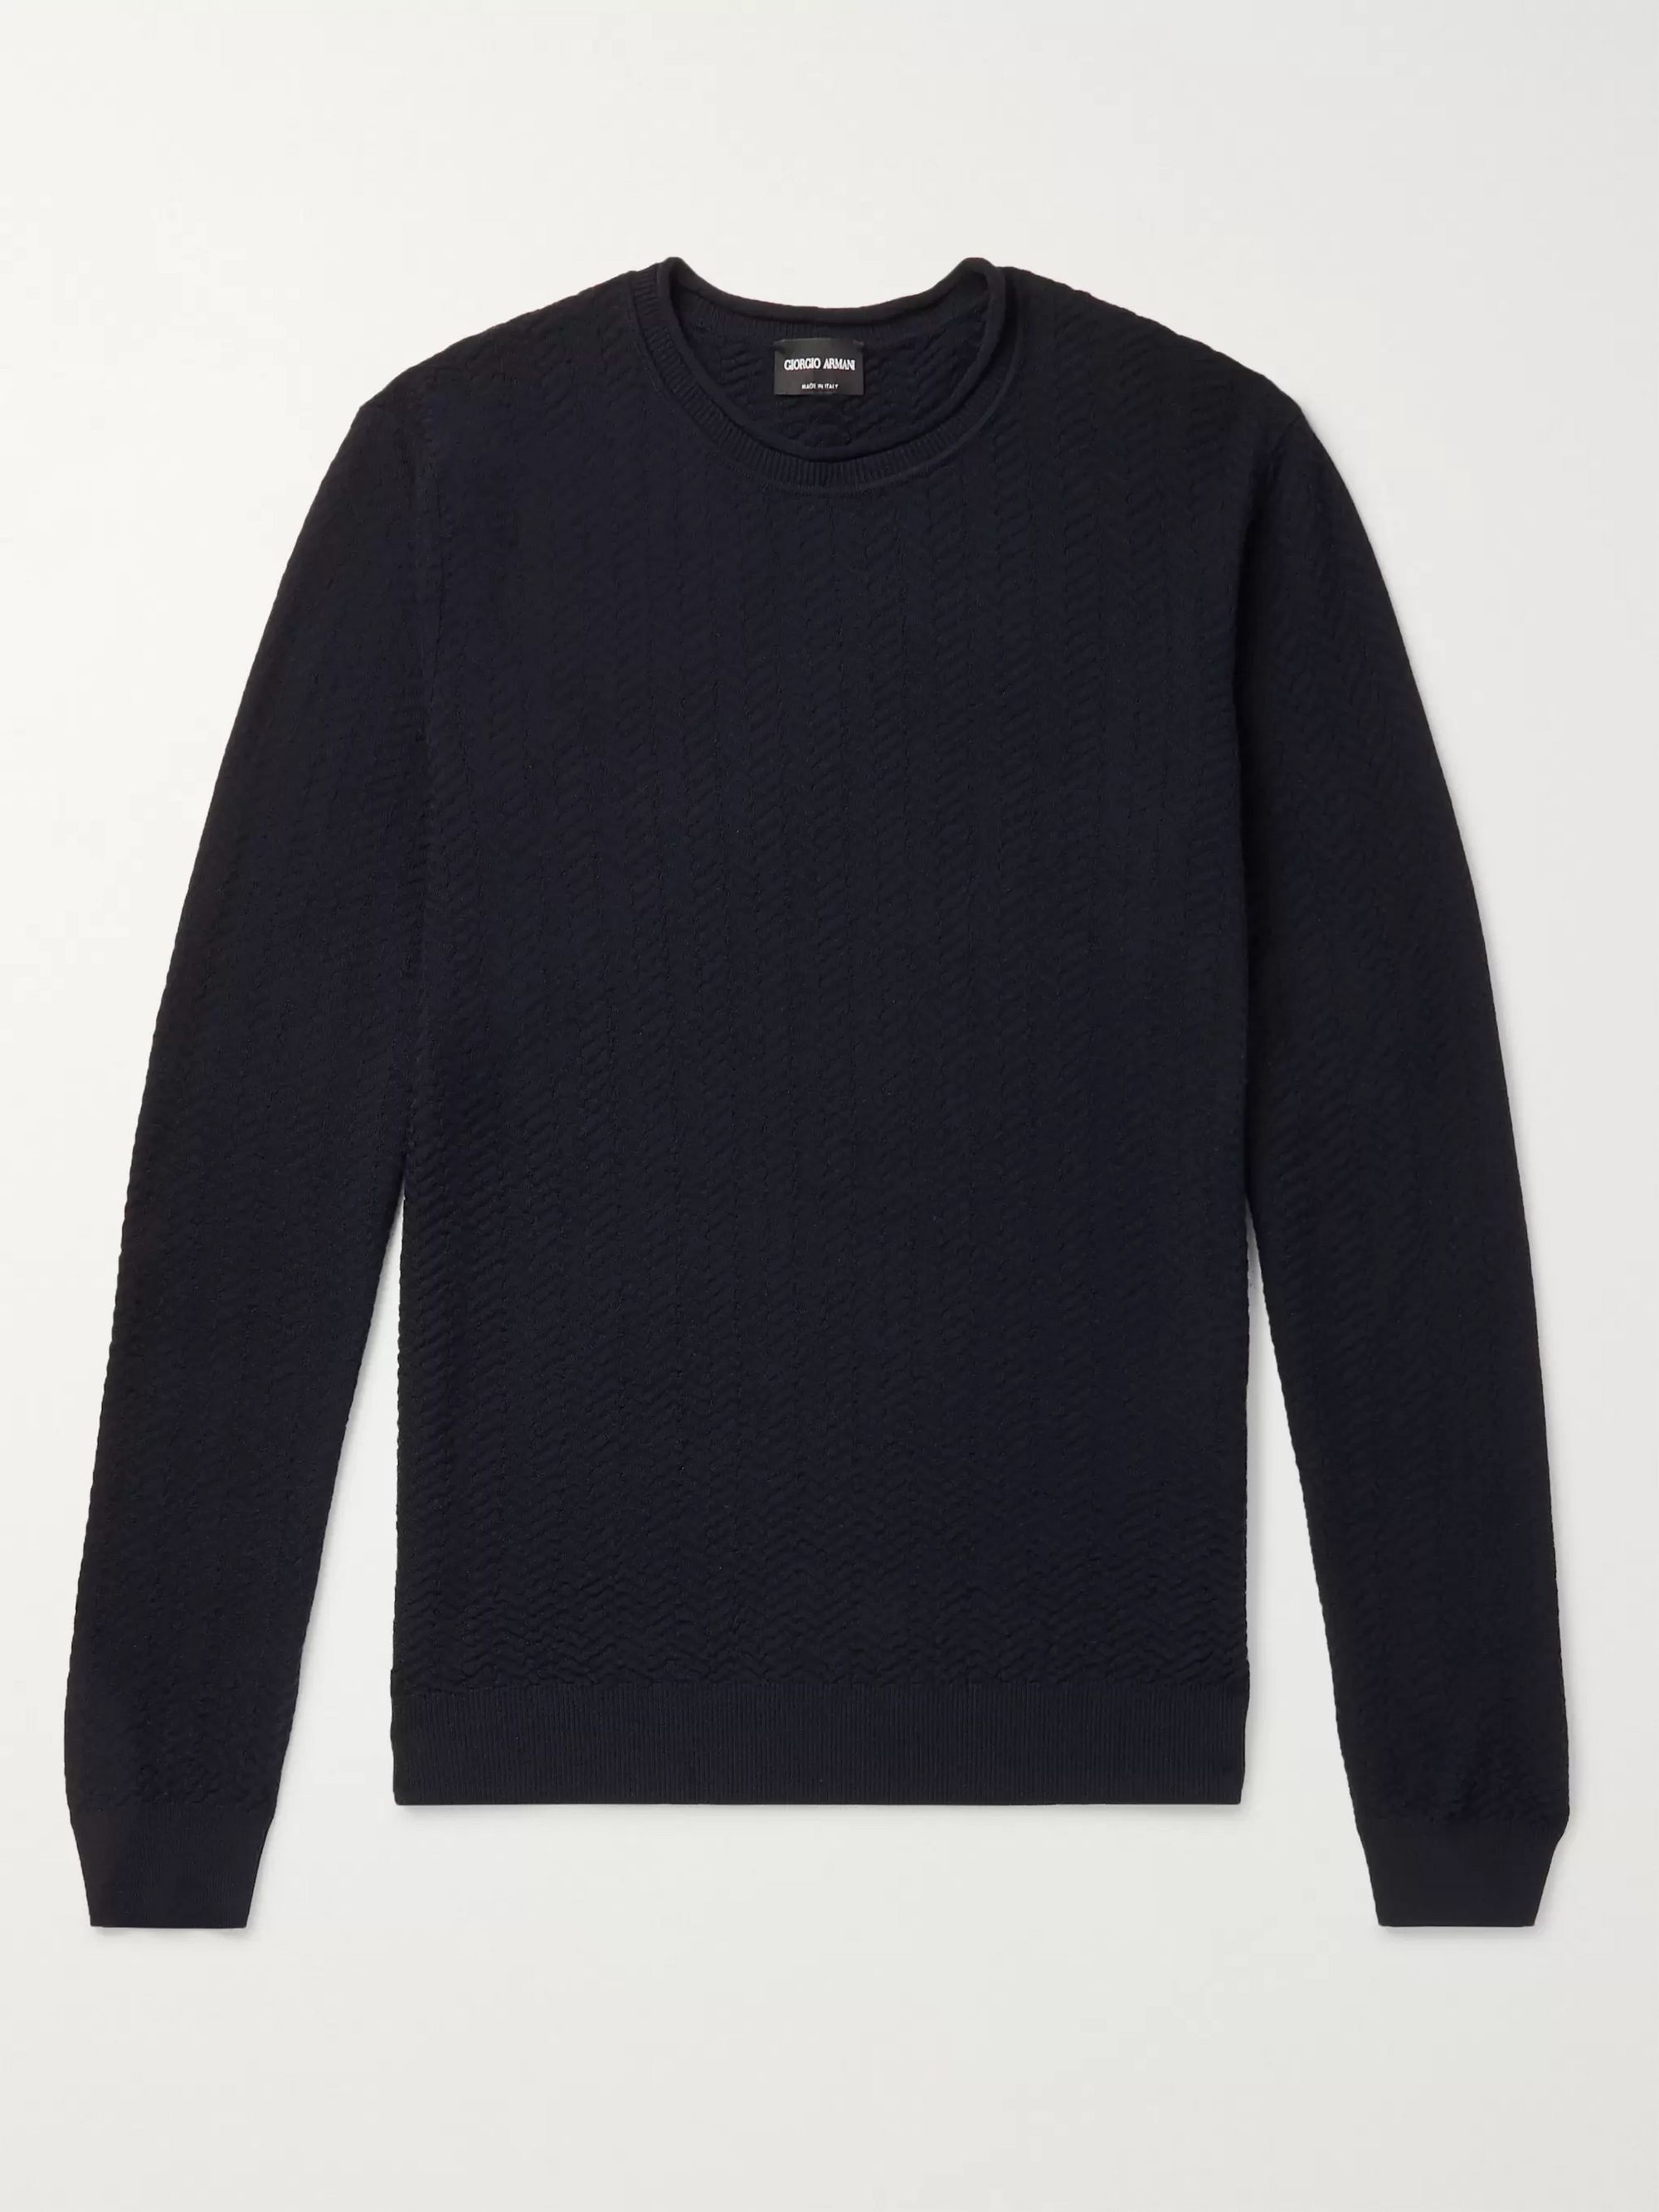 black armani sweater